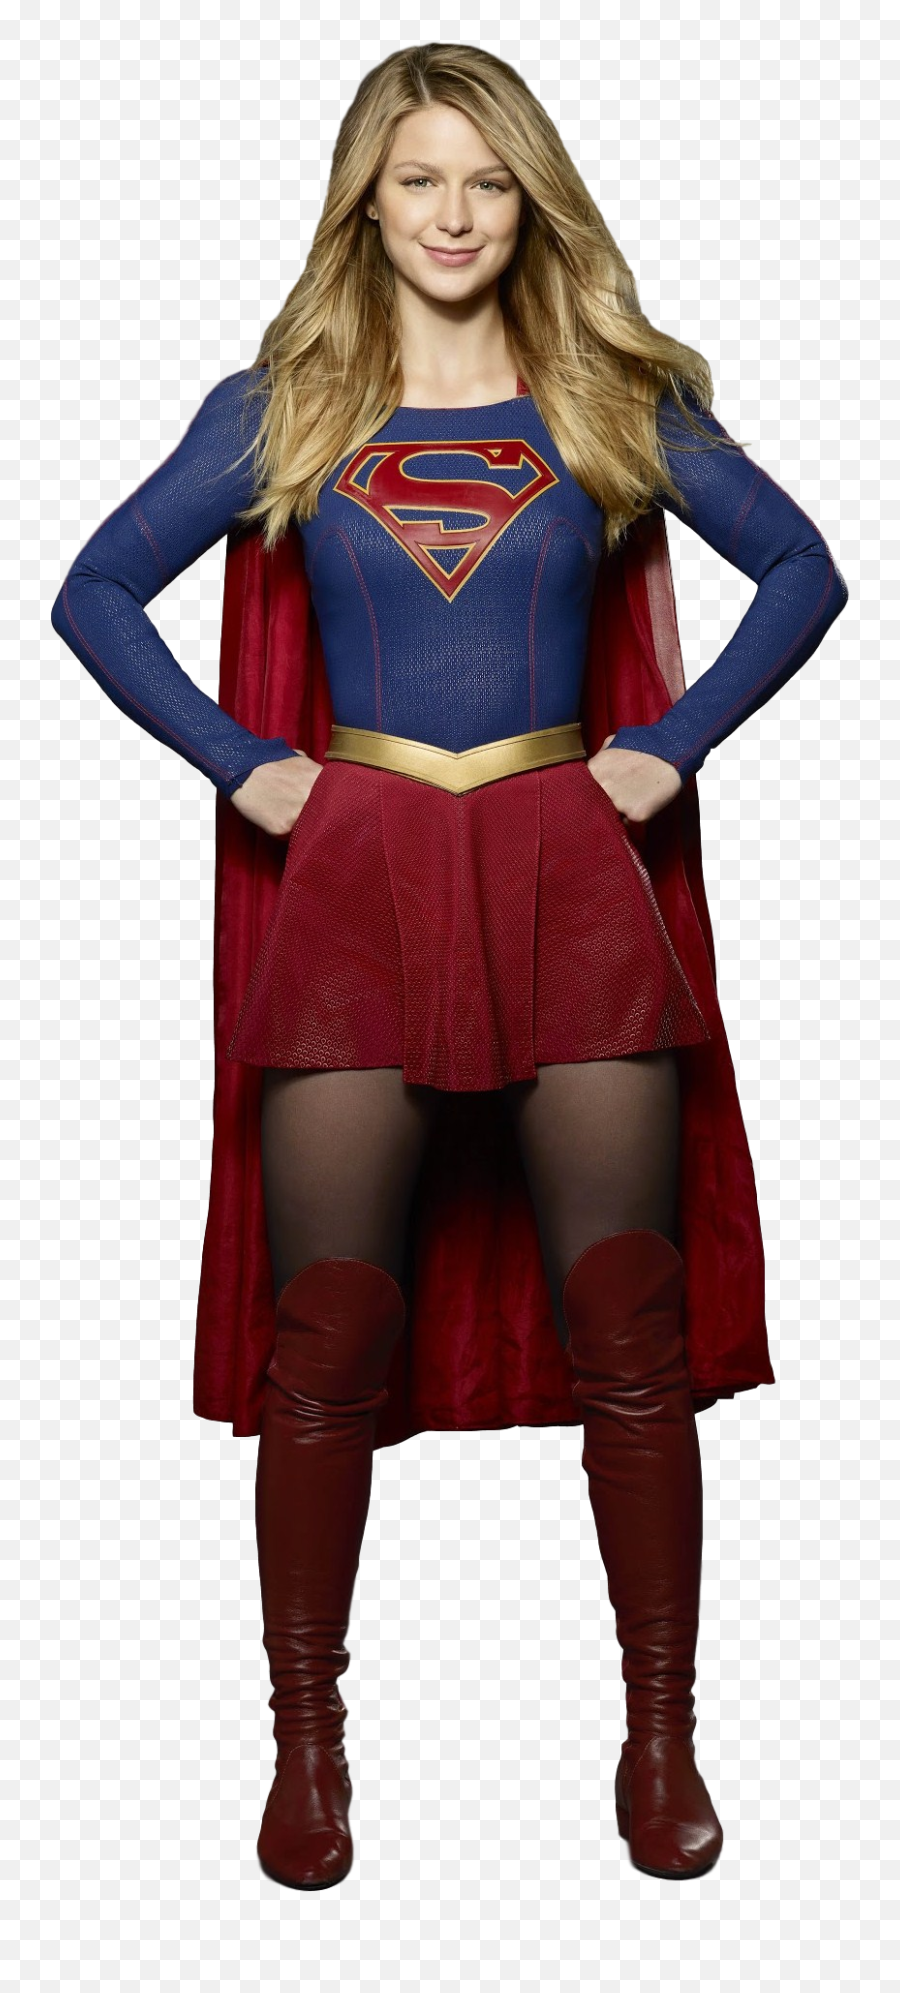 Supergirl Png - Supergirl Wearing Wonder Boots,Supergirl Png